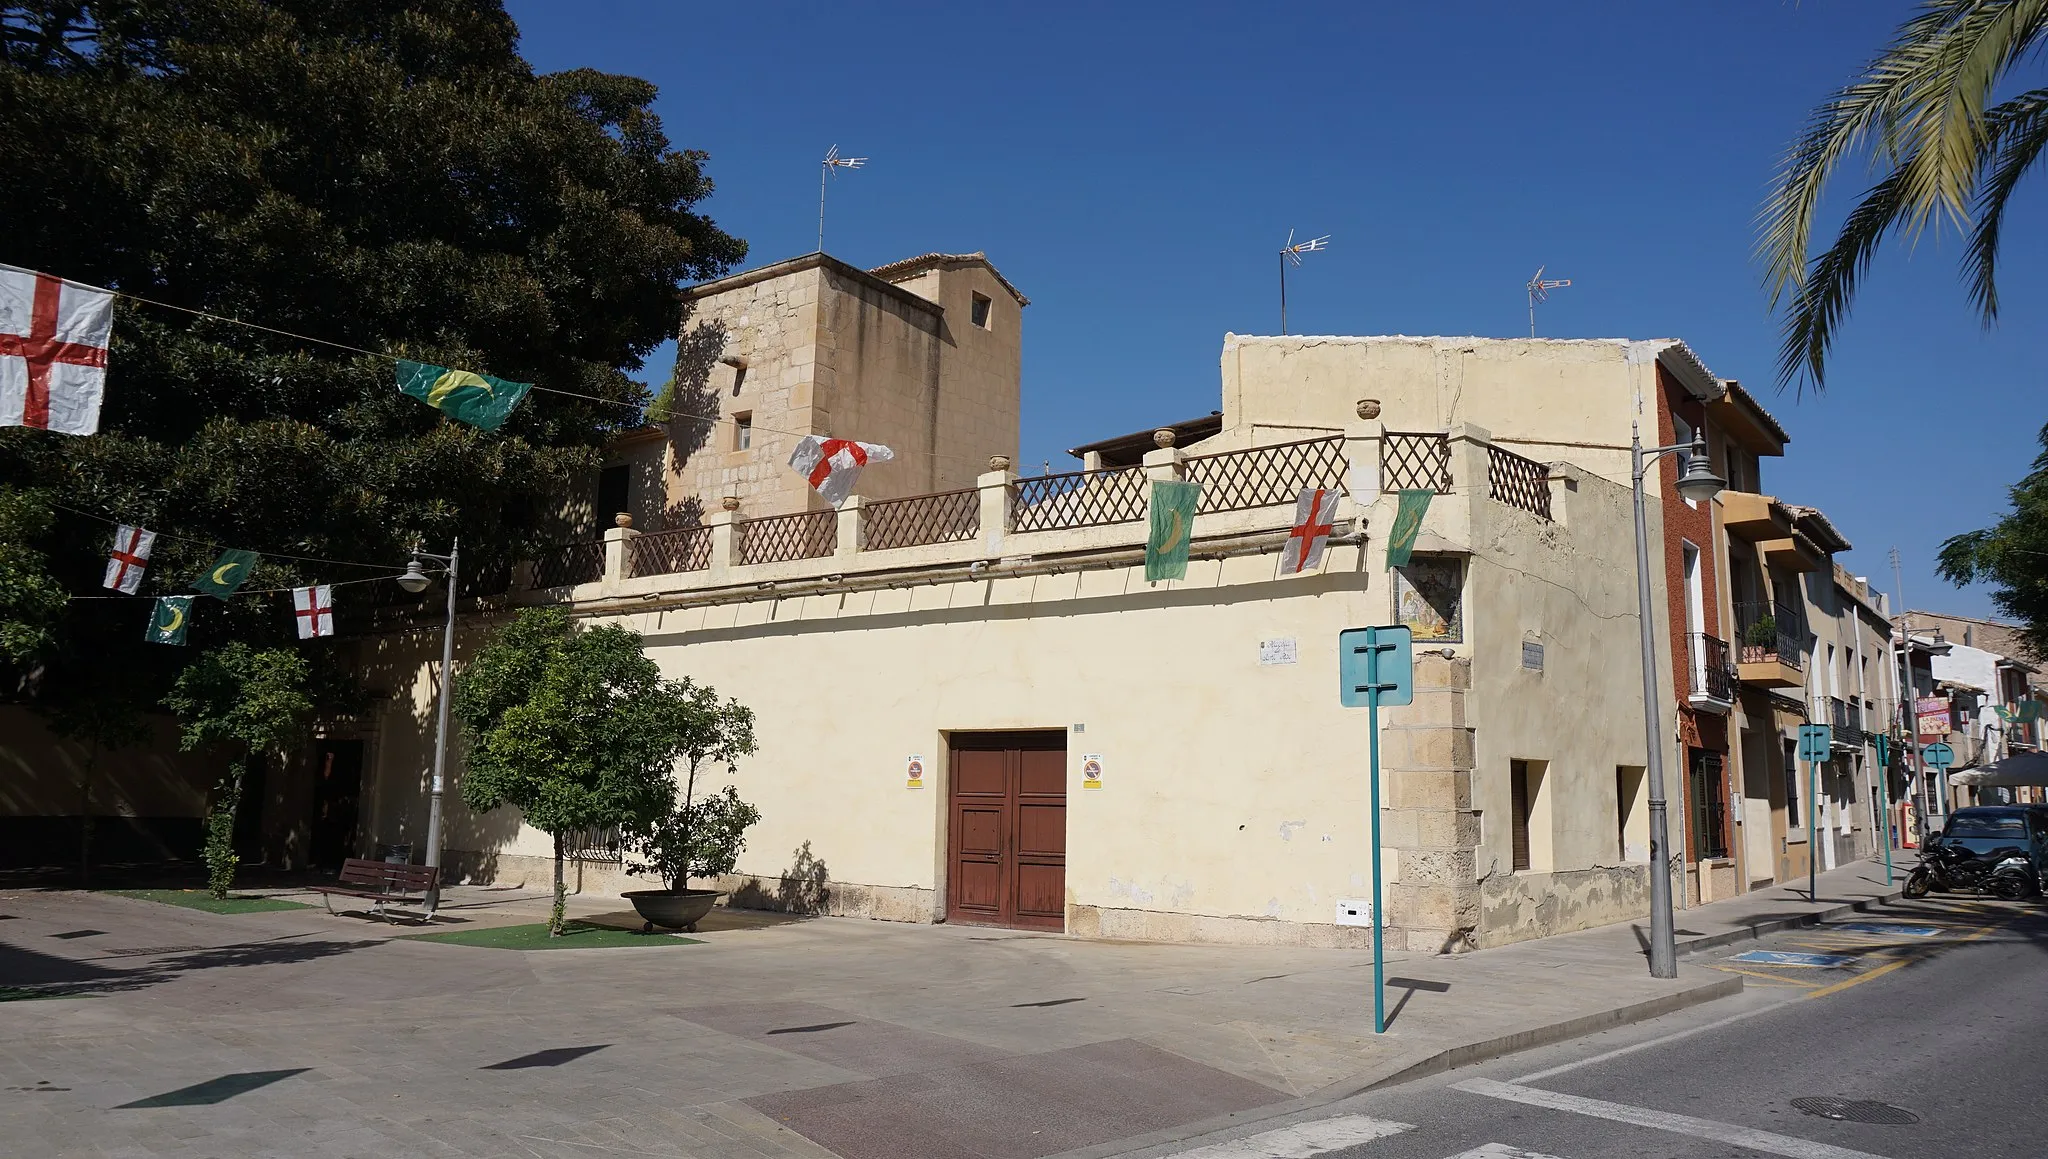 Photo showing: Se puede observar en el centro derecha la Torre Ferraz, a su izquierda se ve el ficus que asoma del Jardín de la Finca Casa de Ferraz. Se distingue el cruce entre el Paseo de la Constitución y la plaza San Roque.